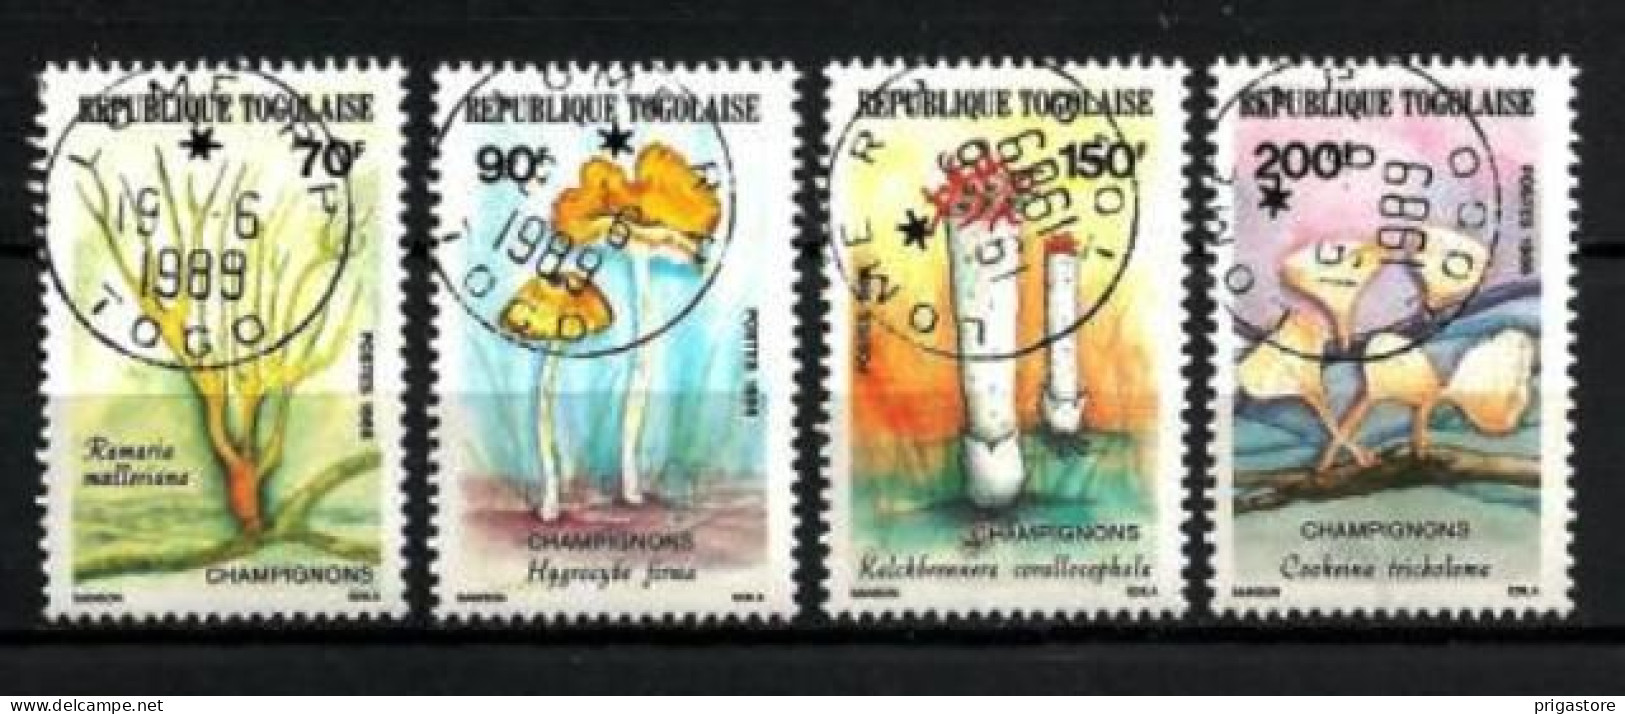 Champignons Togo 1986 (25) Yvert N° 1196 à 1199 Oblitérés Used - Hongos